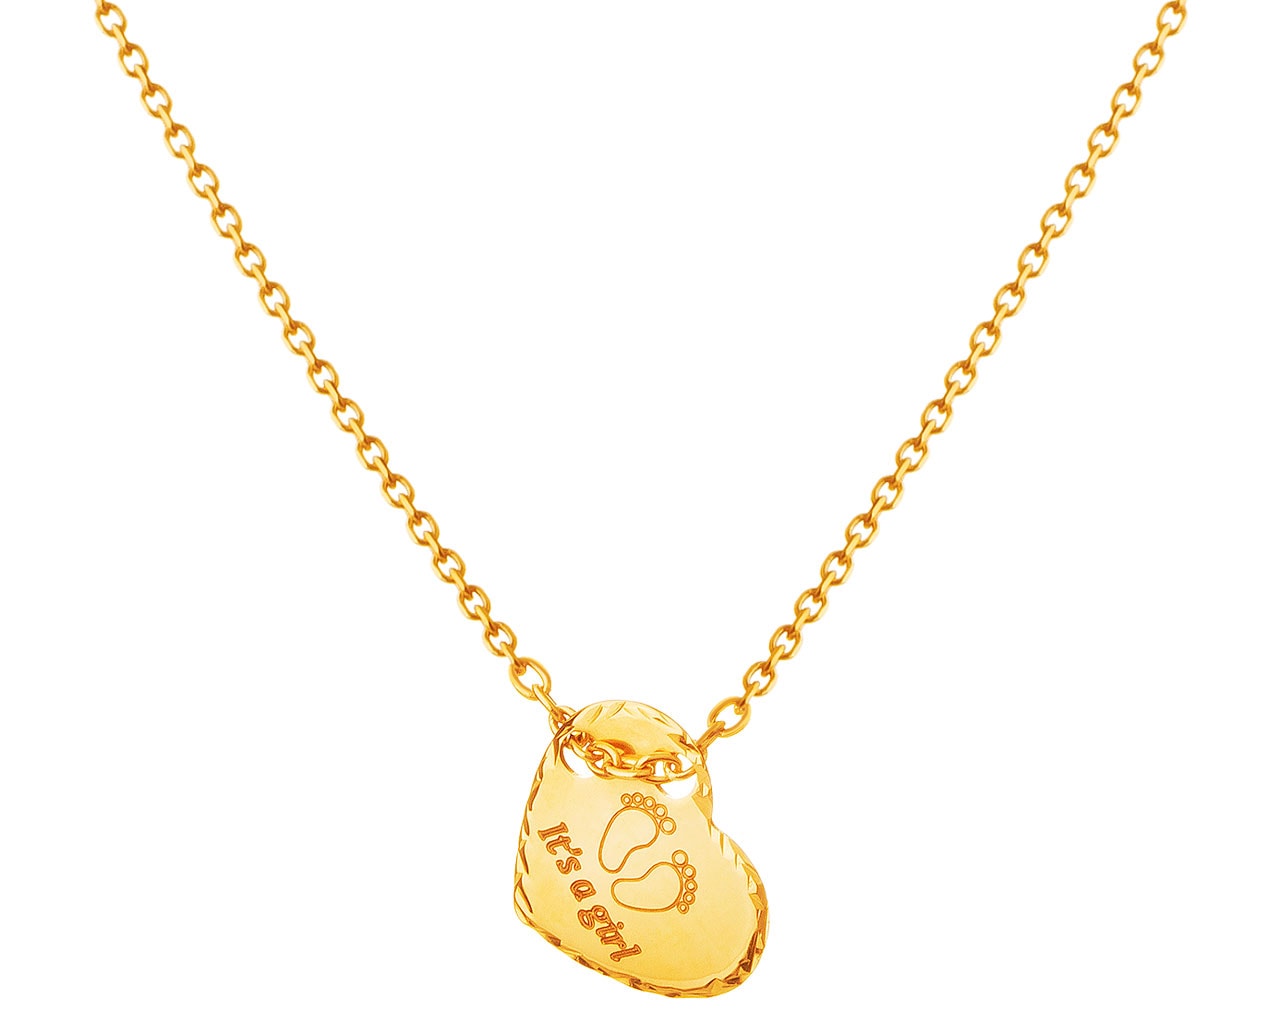 Zlatý náhrdelník, anker - srdce, chodidla, It's a girl